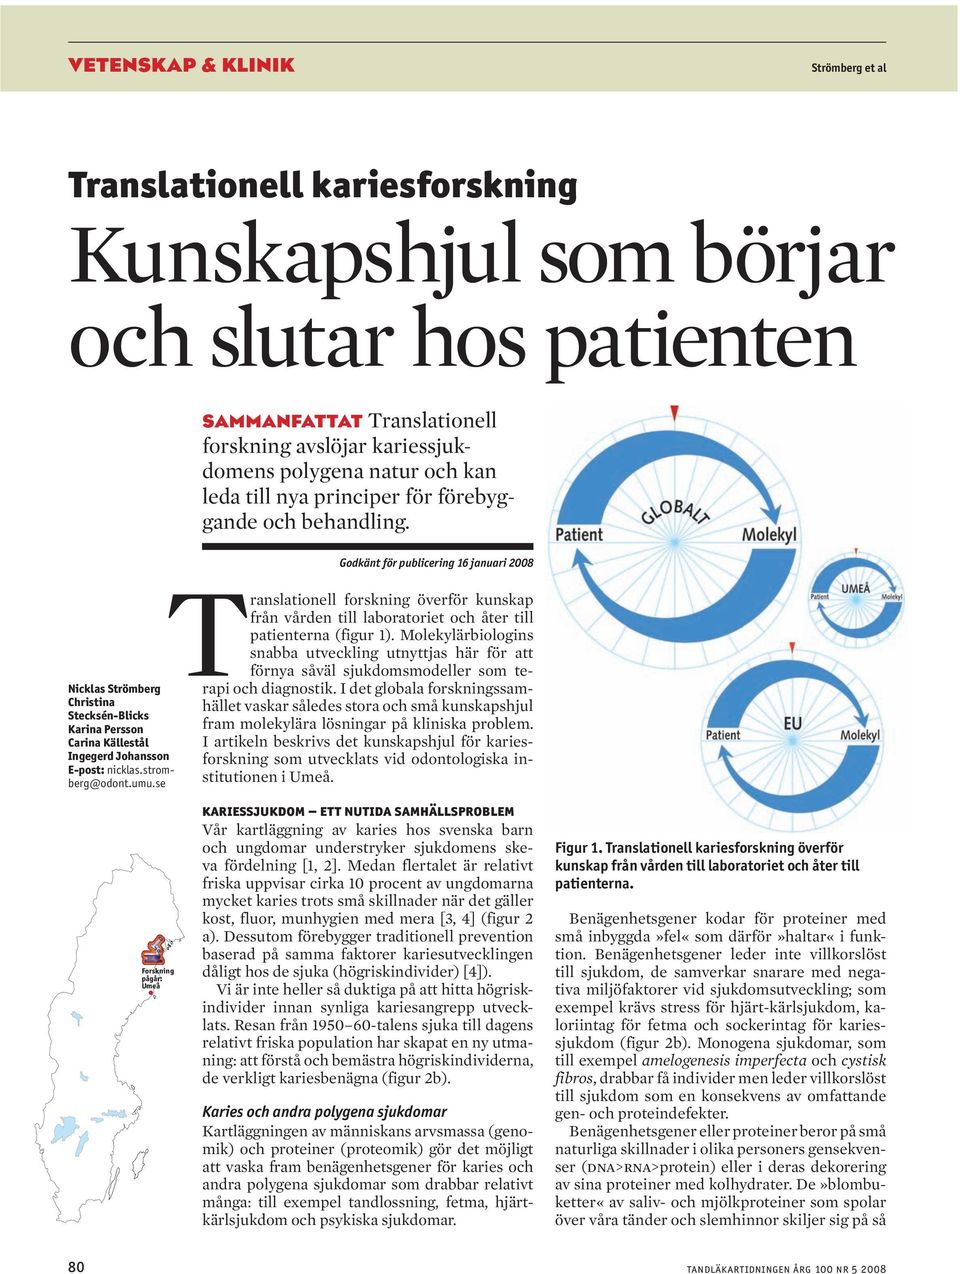 stromberg@odont.umu.se Forskning pågår: Umeå Translationell forskning överför kunskap från vården till laboratoriet och åter till patienterna (figur 1).